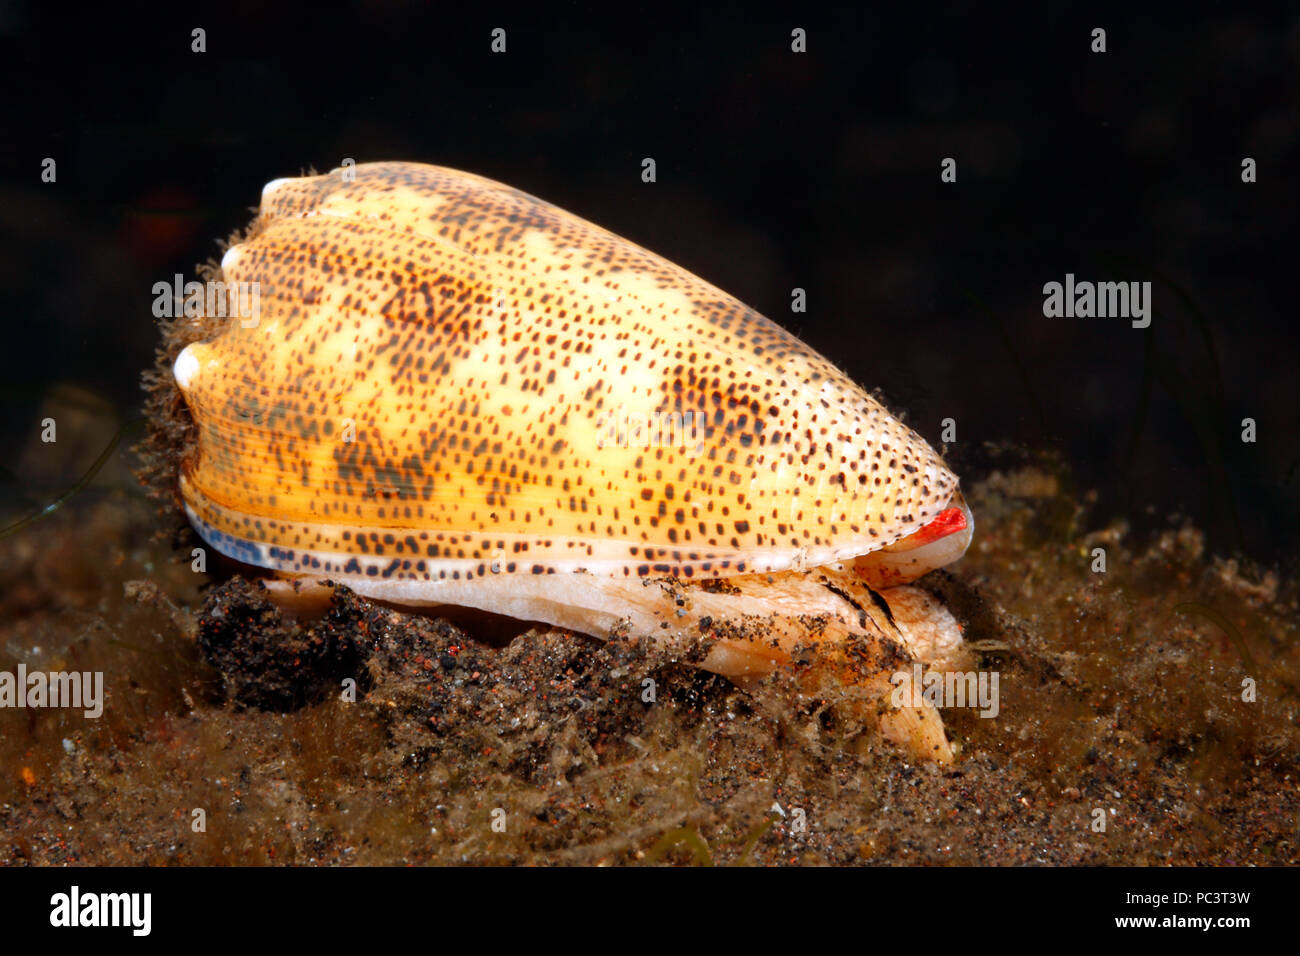 Cono espolvoreado de arena shell, Conus arenatus. Vida subacuática, mostrando los pies, manto, syphon y ojo. Tulamben, Bali, Indonesia. Bali, mar, océano Índico Foto de stock